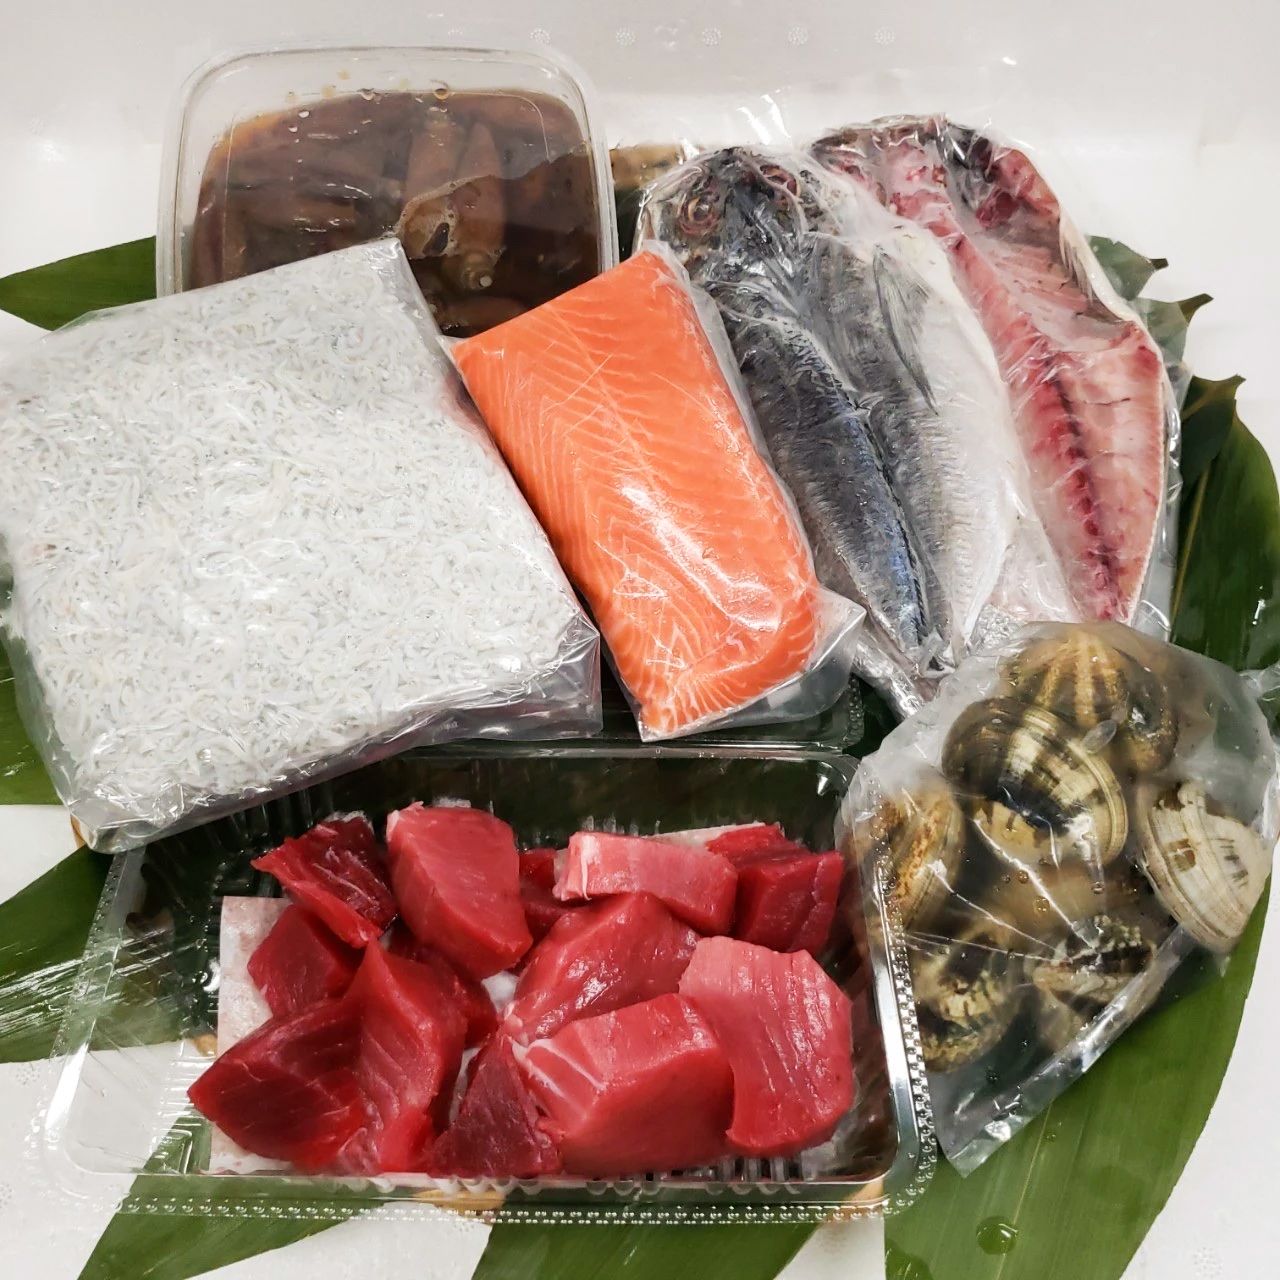 Lote Chokottozutsu, que incluye una selección de los productos más recomendados por Otatsu Shōten: atún rojo del Atlántico en butsu (trozos gordos), salmón, alevines escaldados y jurel abierto en canal, entre otros (imagen de Otatsu Shōten).